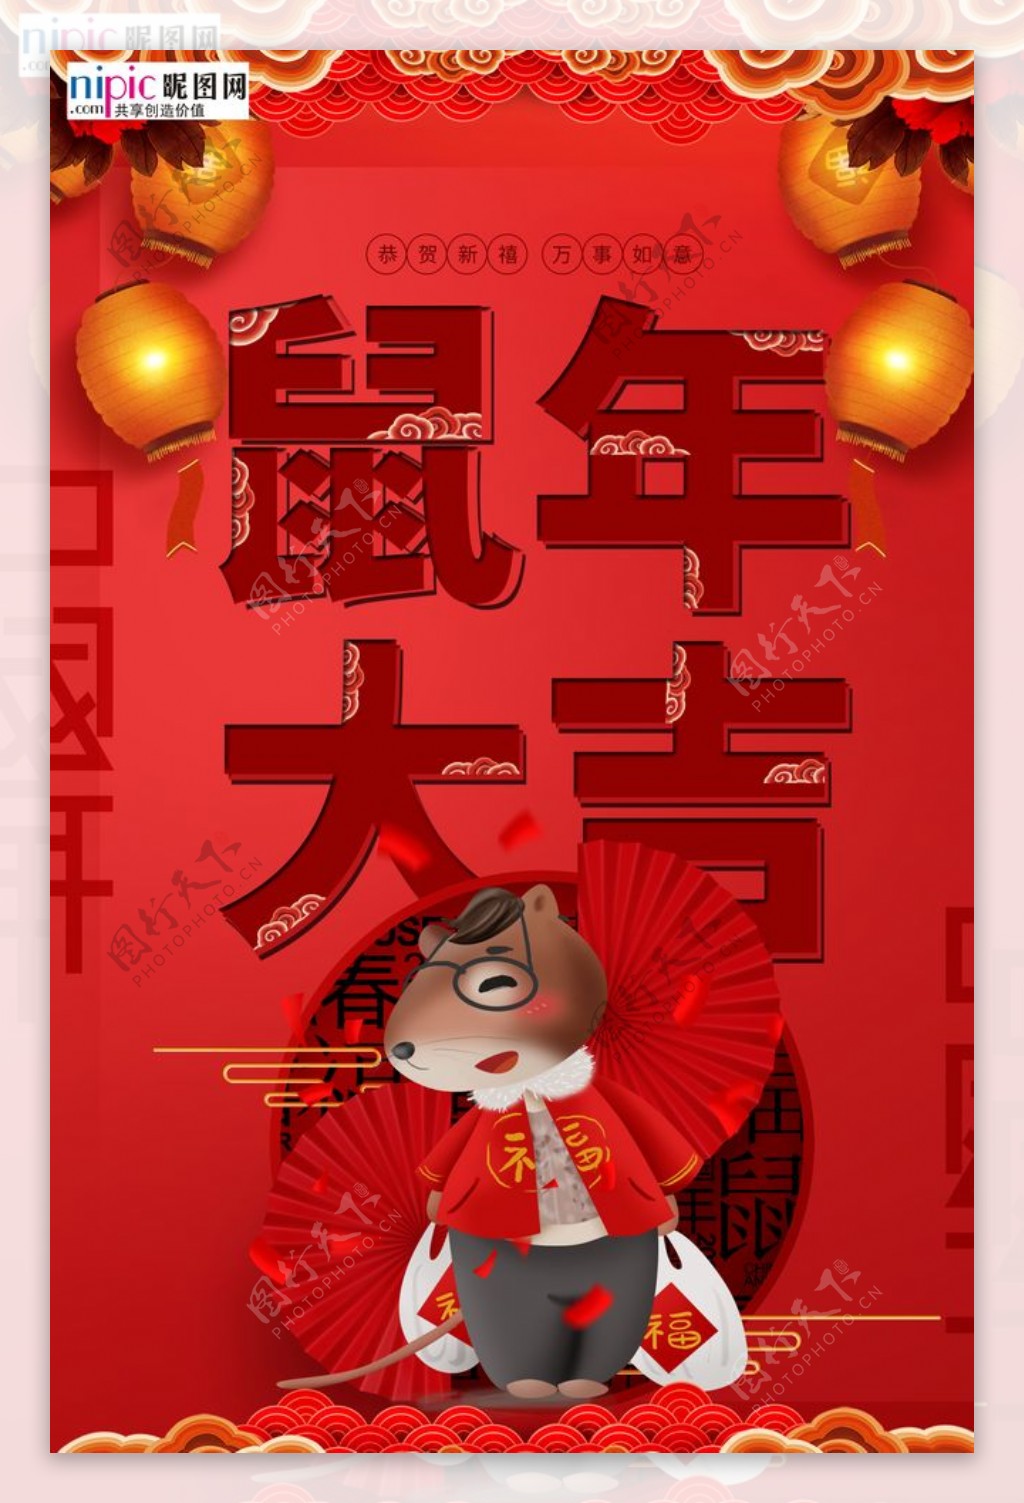 大红传统复古鼠年大吉节日海报